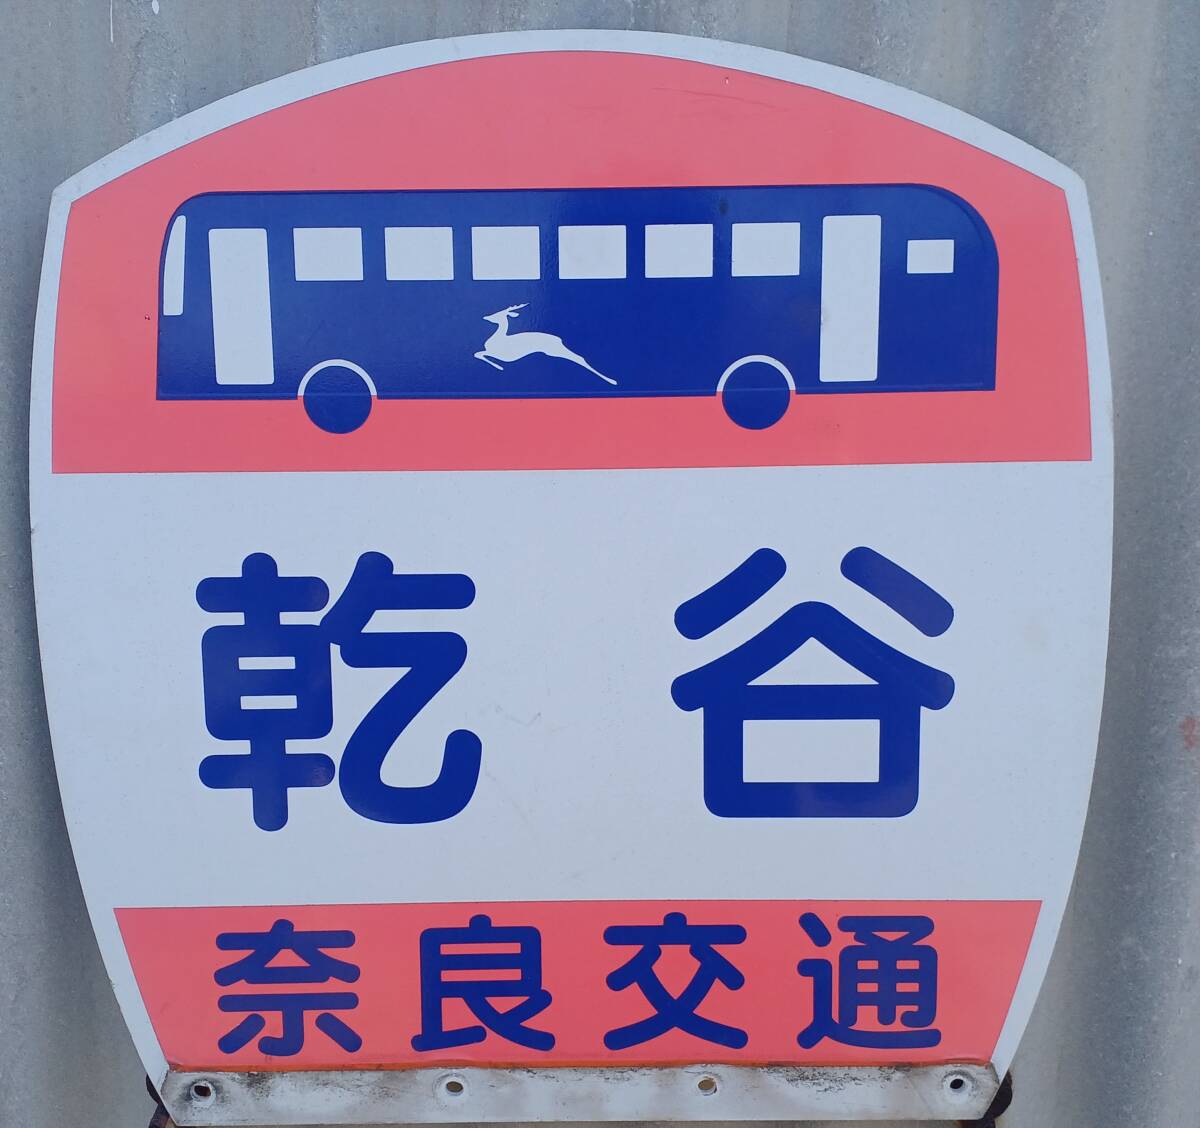 奈良交通 乾谷 バス停板 (長期間受取出来ない方は入札しないでください)の画像1